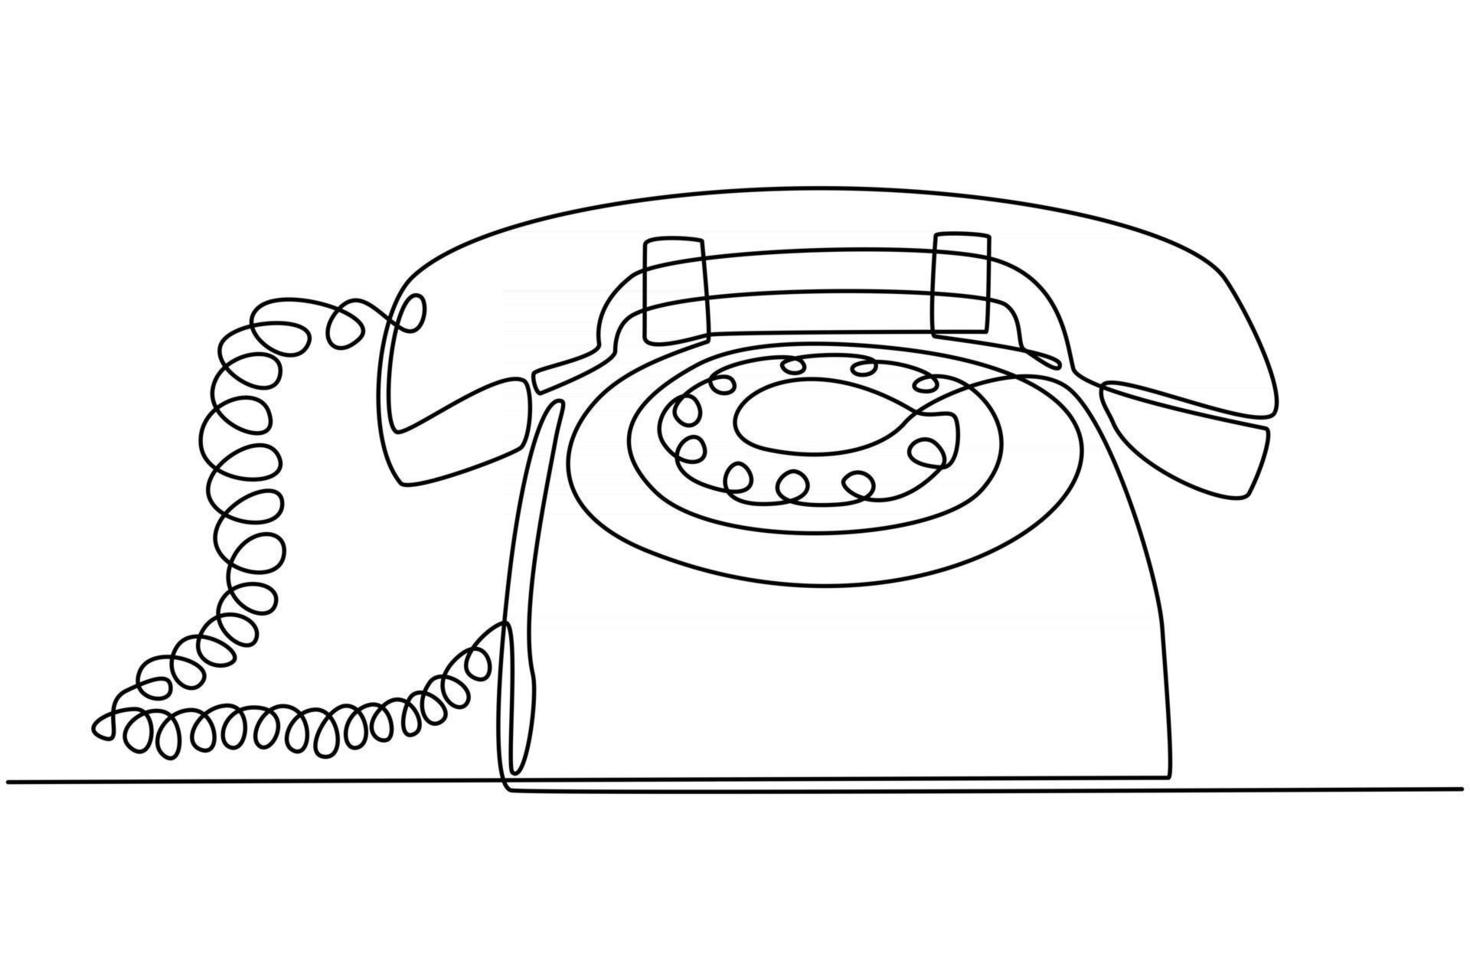 Dibujo de línea continua de la ilustración de vector de dibujo de teléfono retro vintage